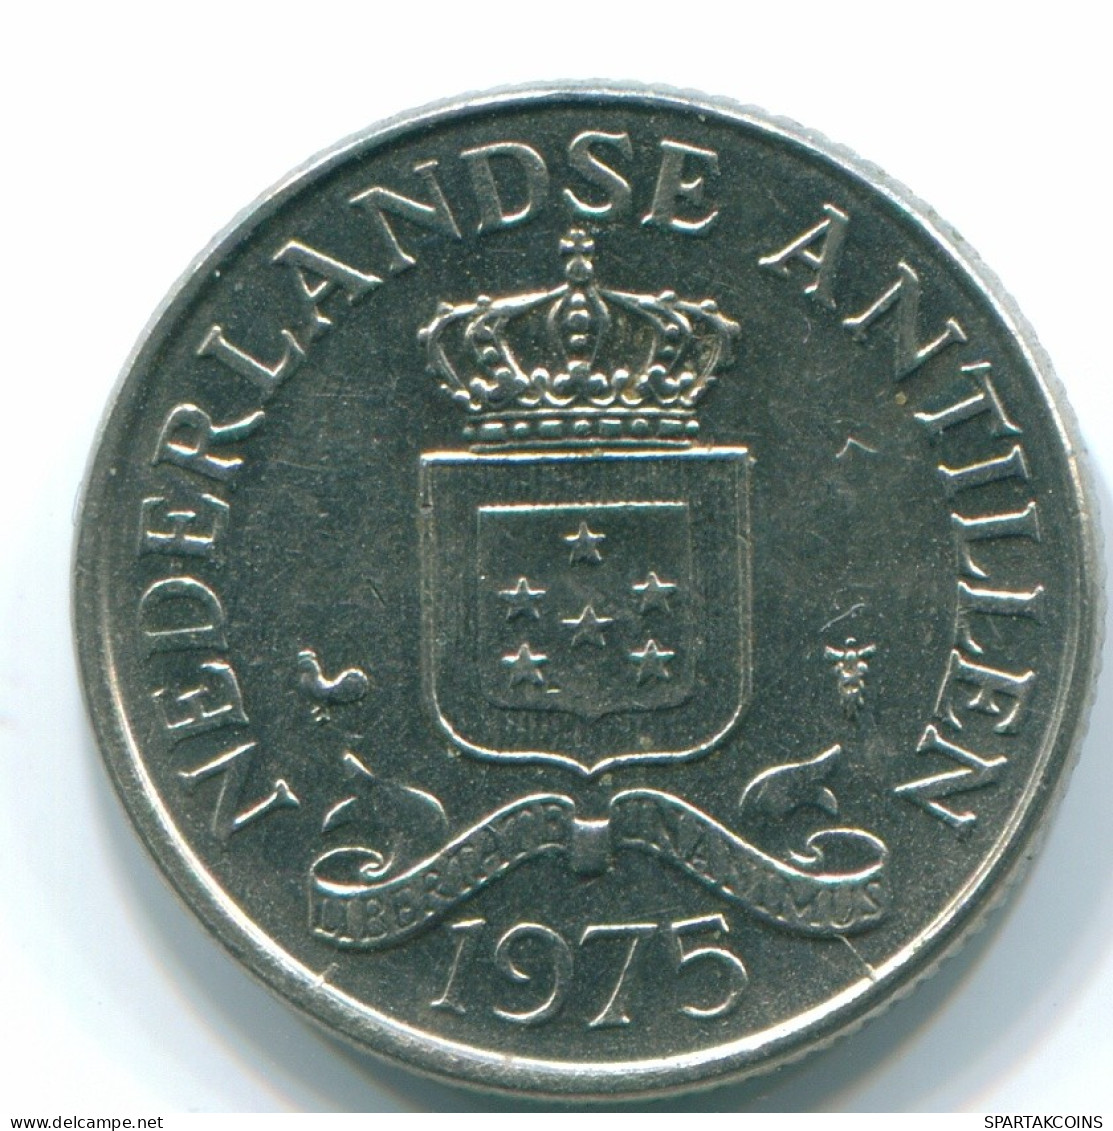 25 CENTS 1975 NIEDERLÄNDISCHE ANTILLEN Nickel Koloniale Münze #S11602.D.A - Antille Olandesi